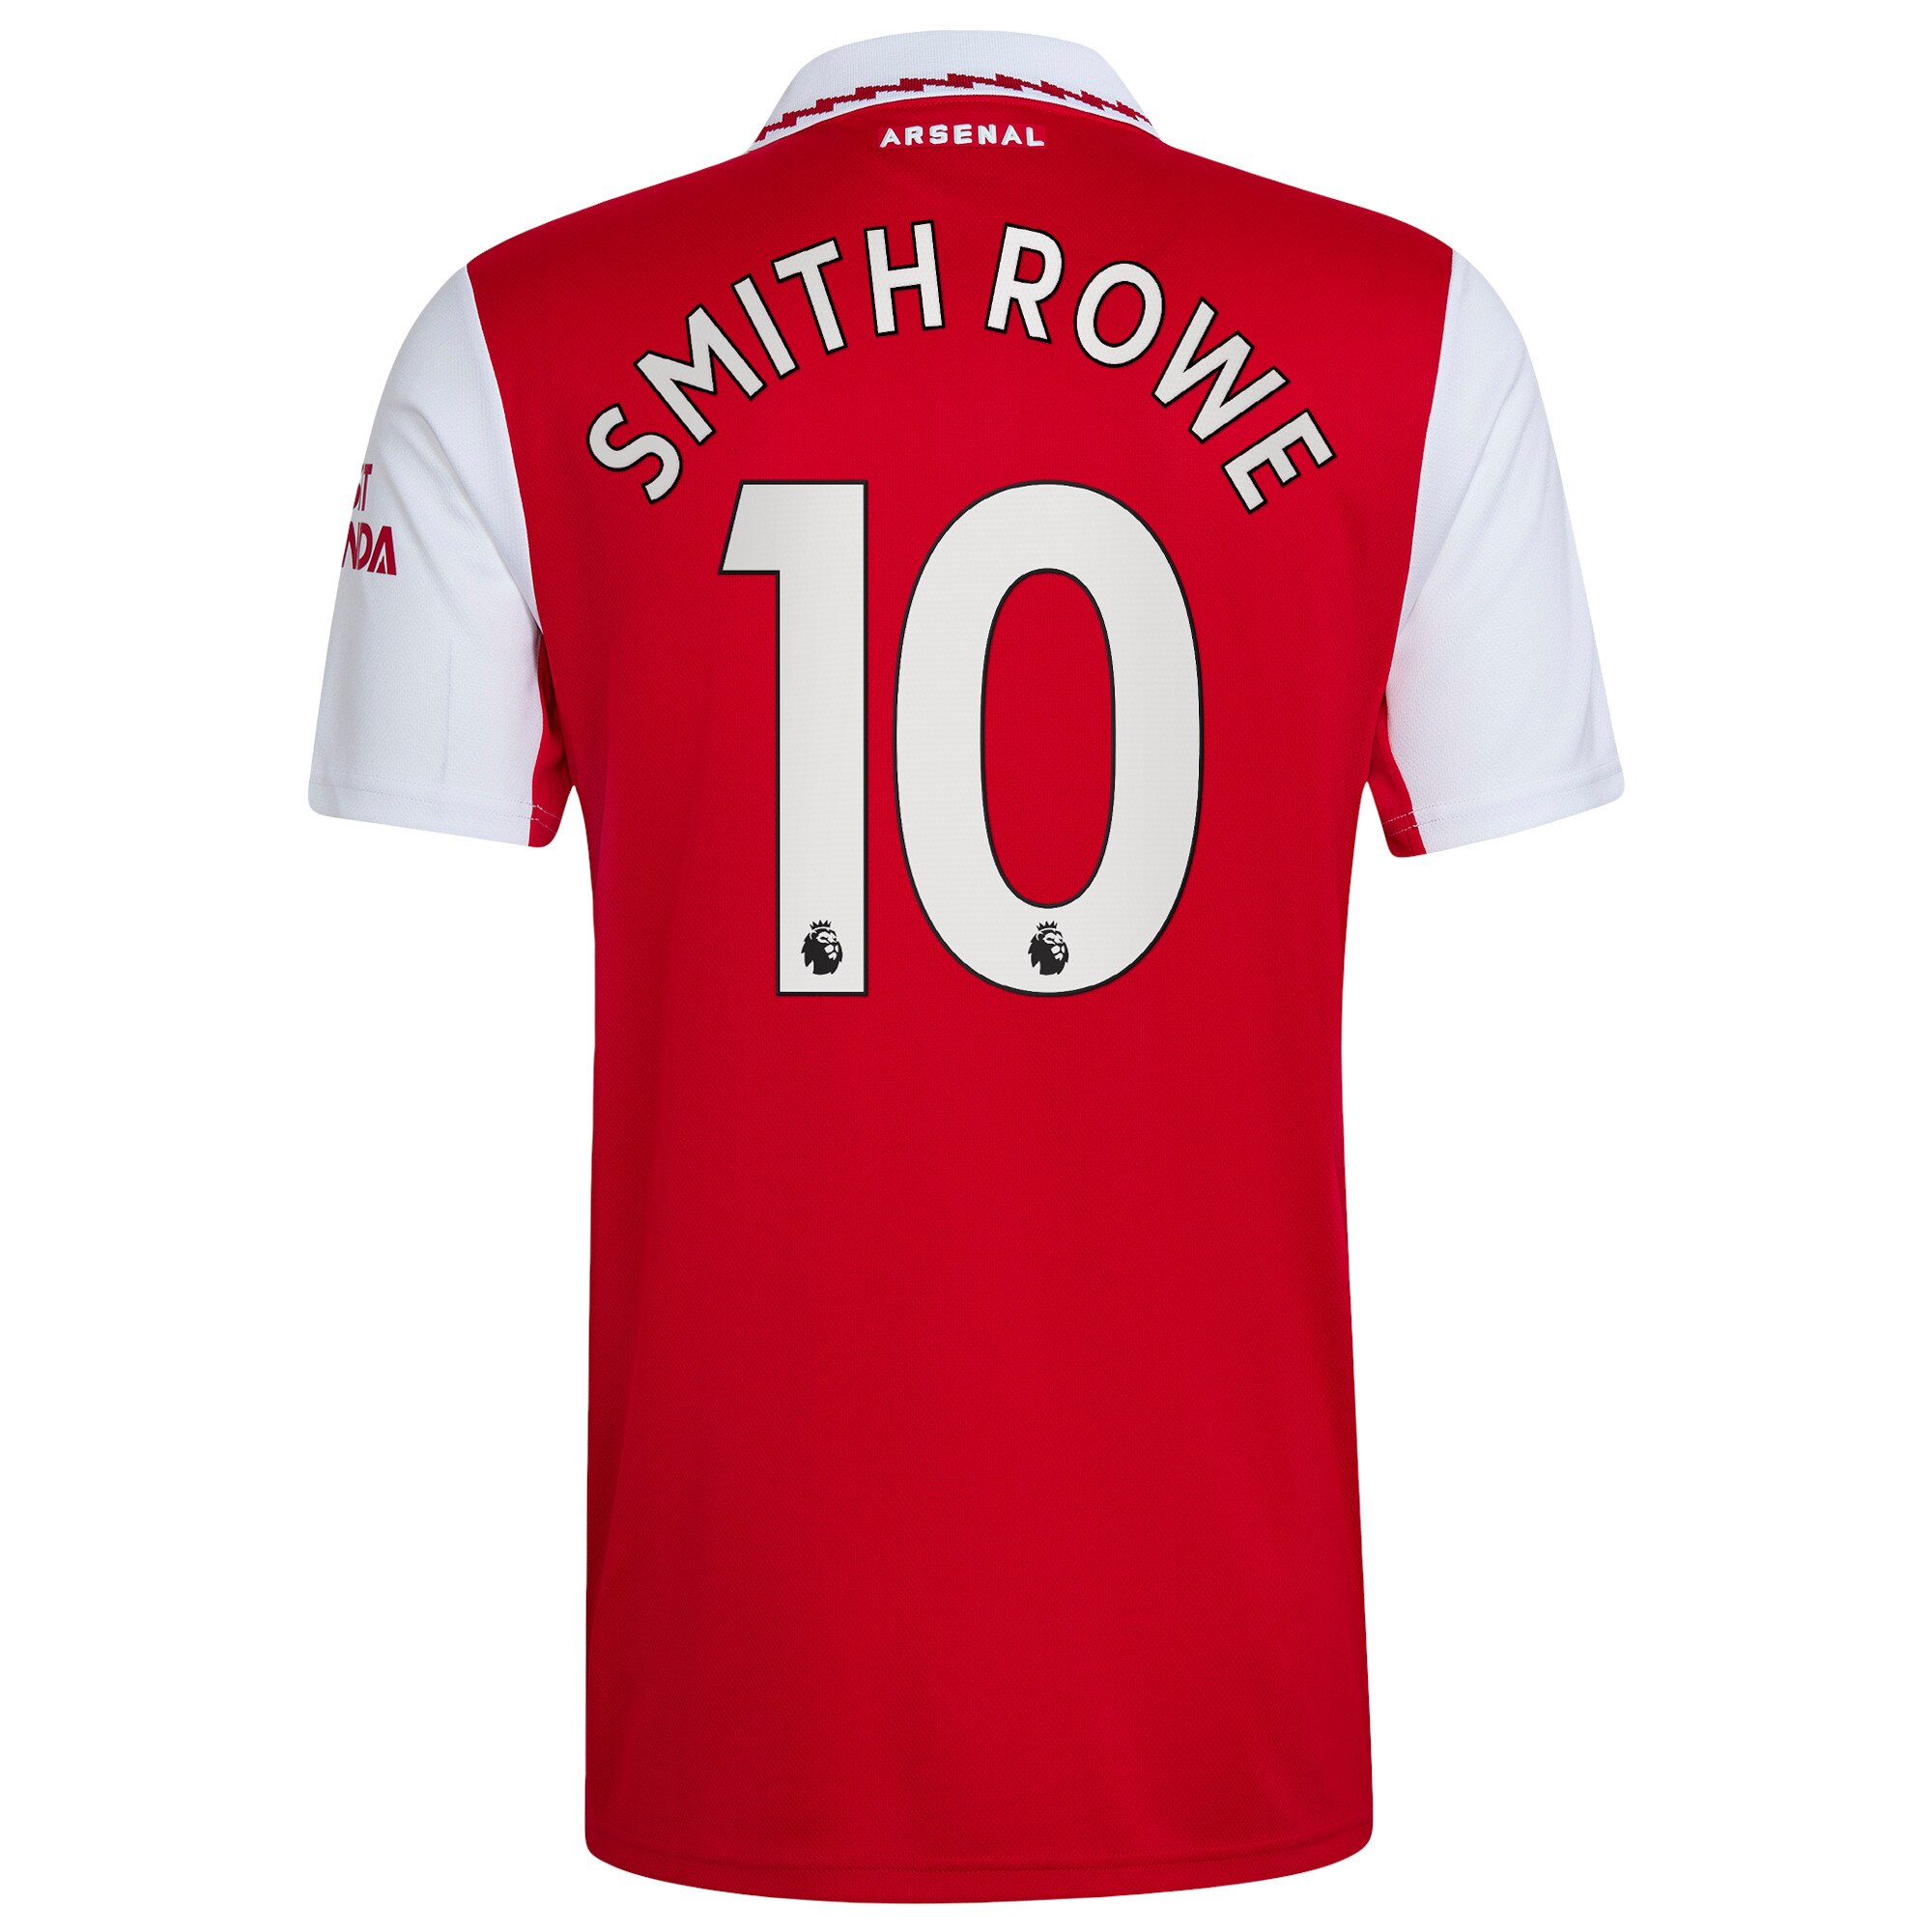 Arsenal Home Shirt 2022/23 with Smith Rowe 10 printing